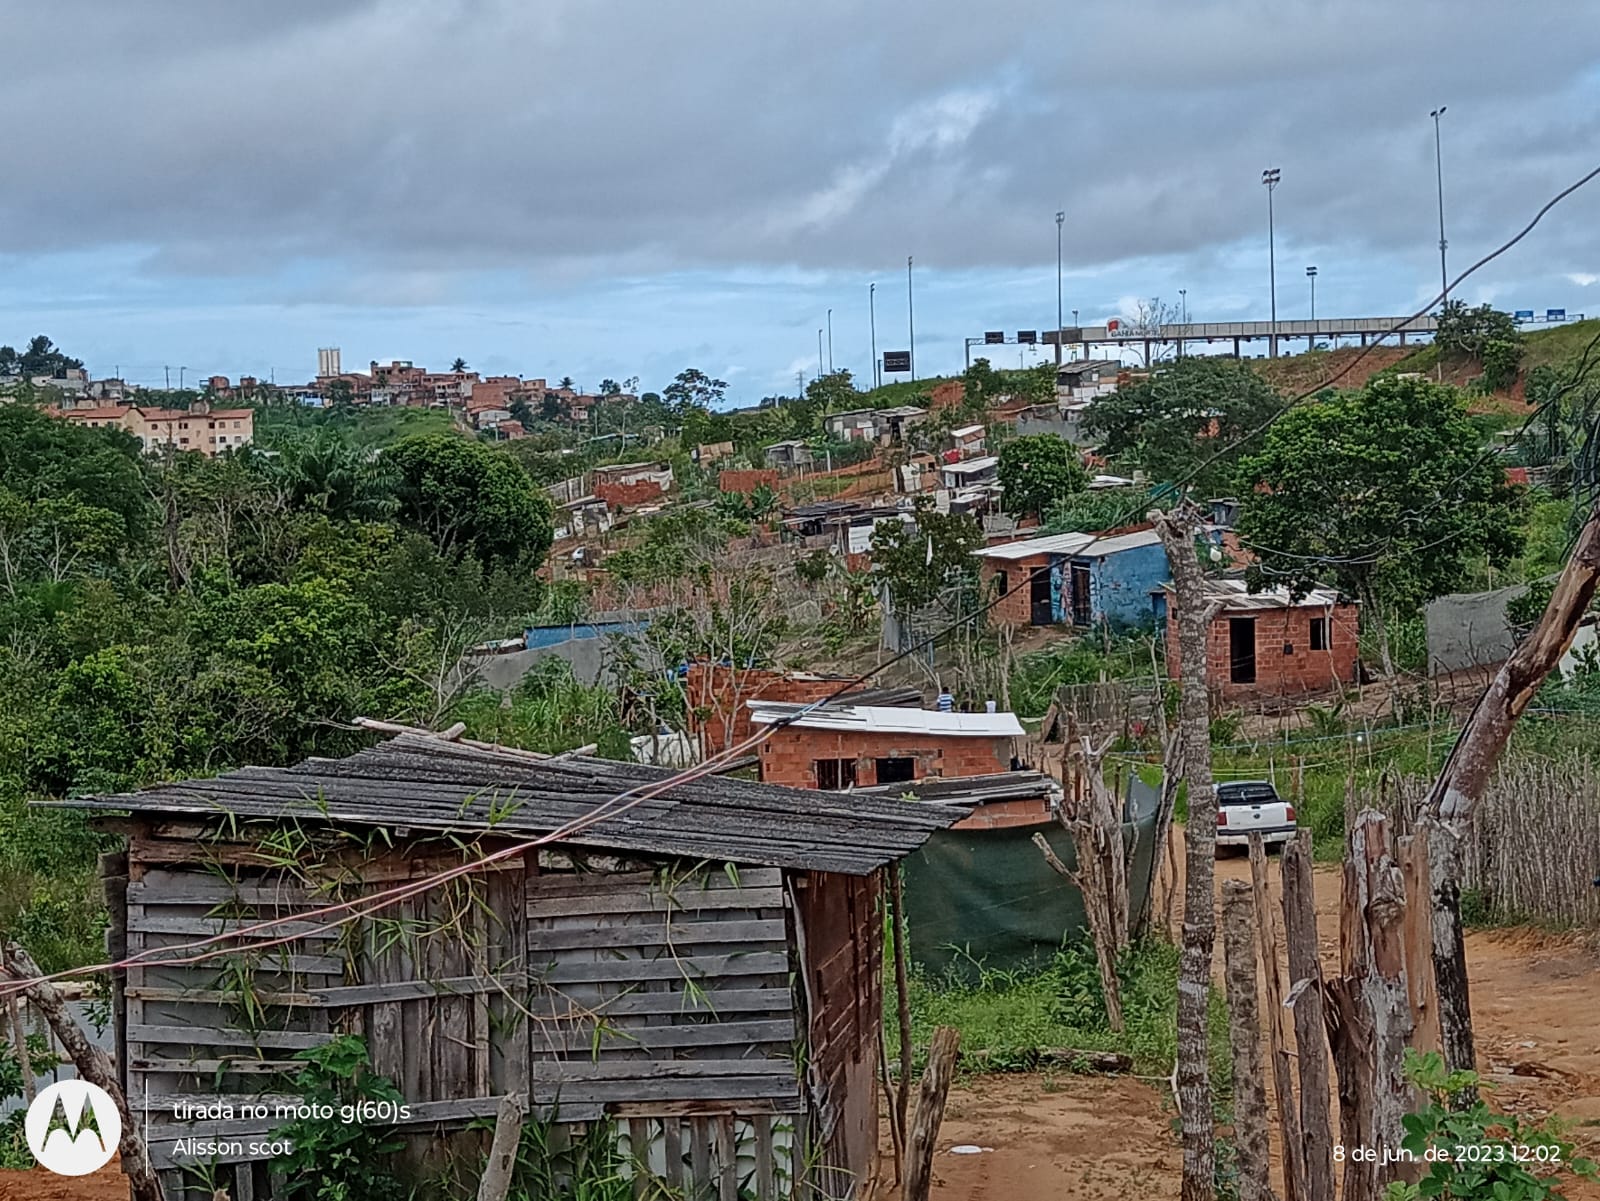 Famílias em ocupação recebem ordem de despejo na Bahia